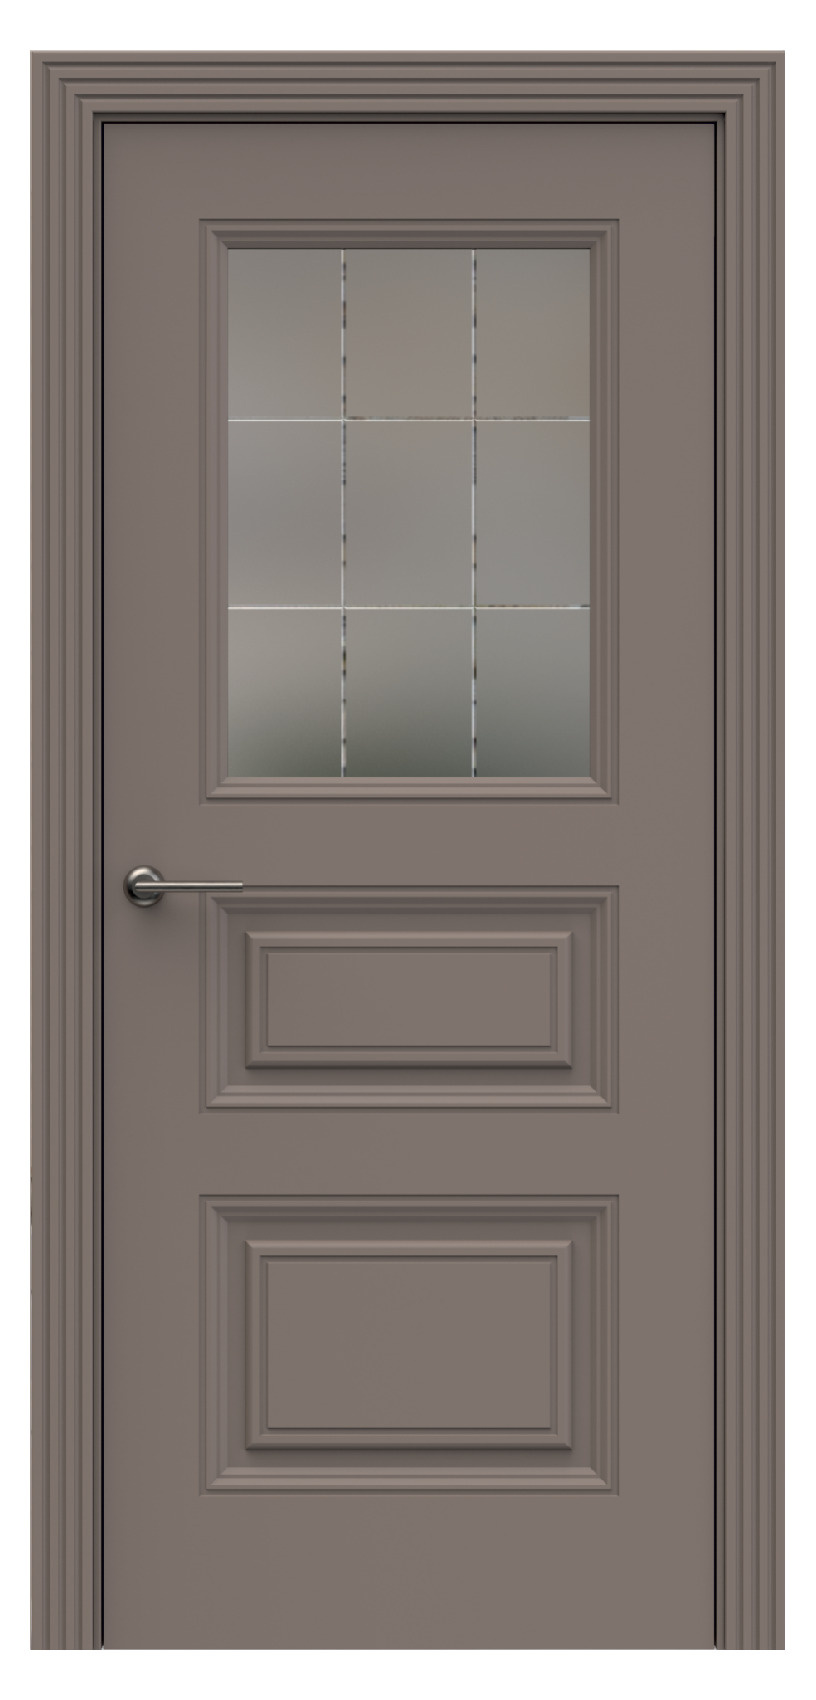 Questdoors Межкомнатная дверь QB5, арт. 17906 - фото №1